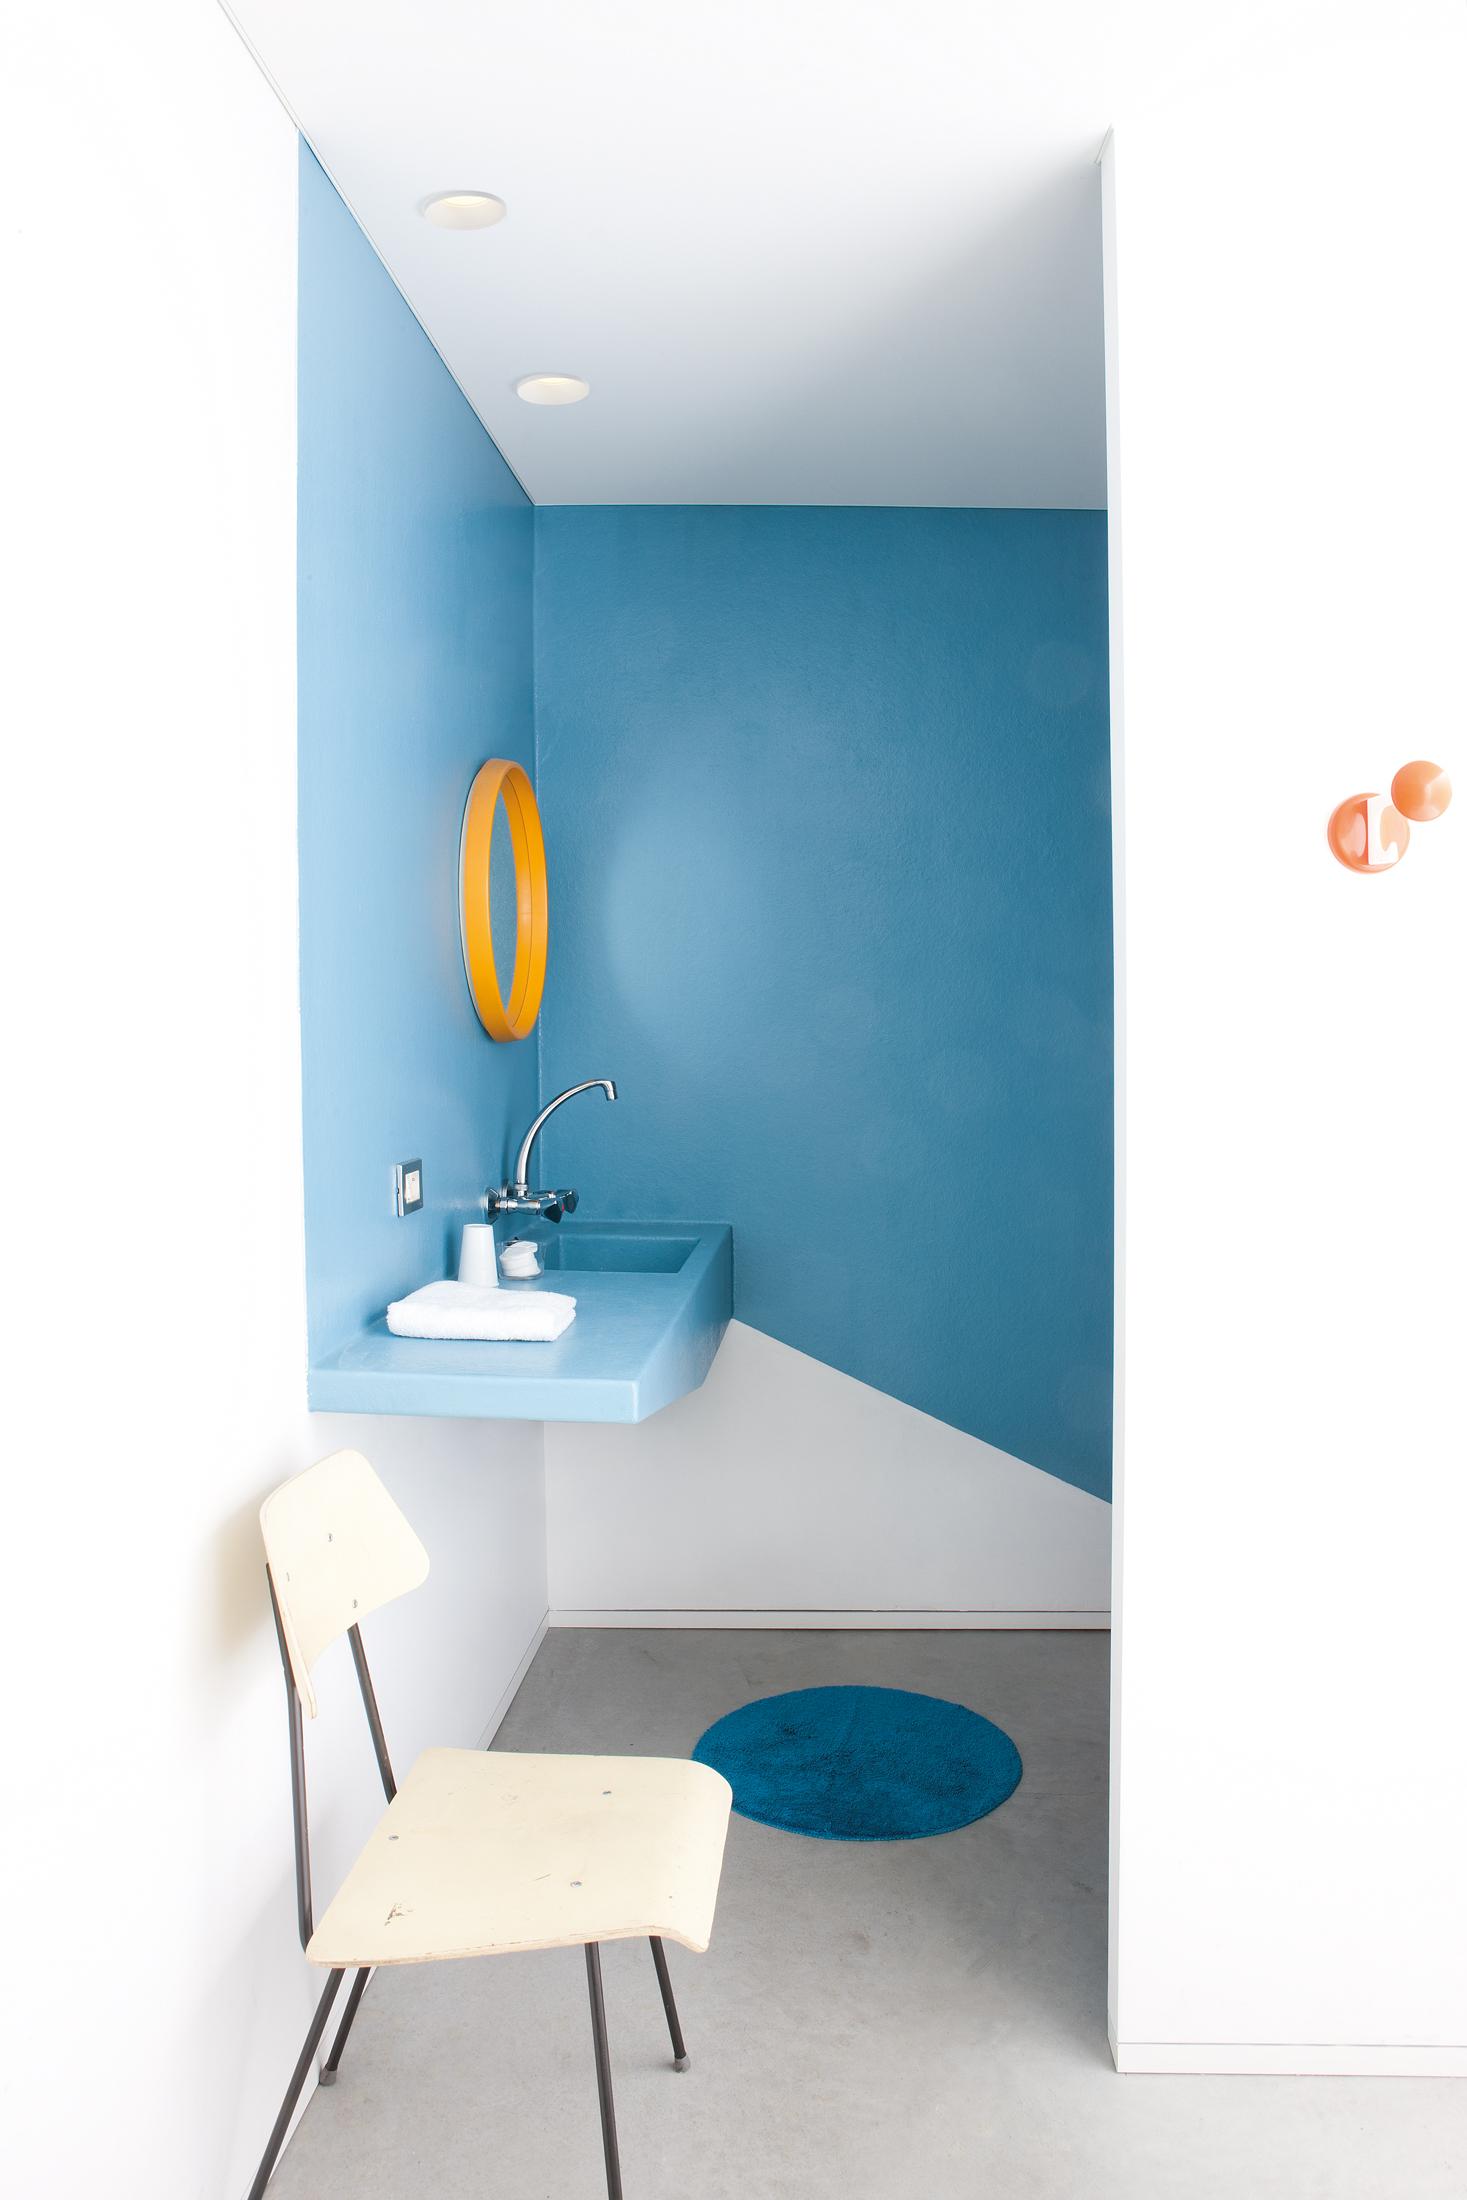 Blaue Wandgestaltung im kleinen Bad #badezimmer #runderspiegel #blauewandgestaltung #zimmergestaltung ©Modular Lighting Instruments